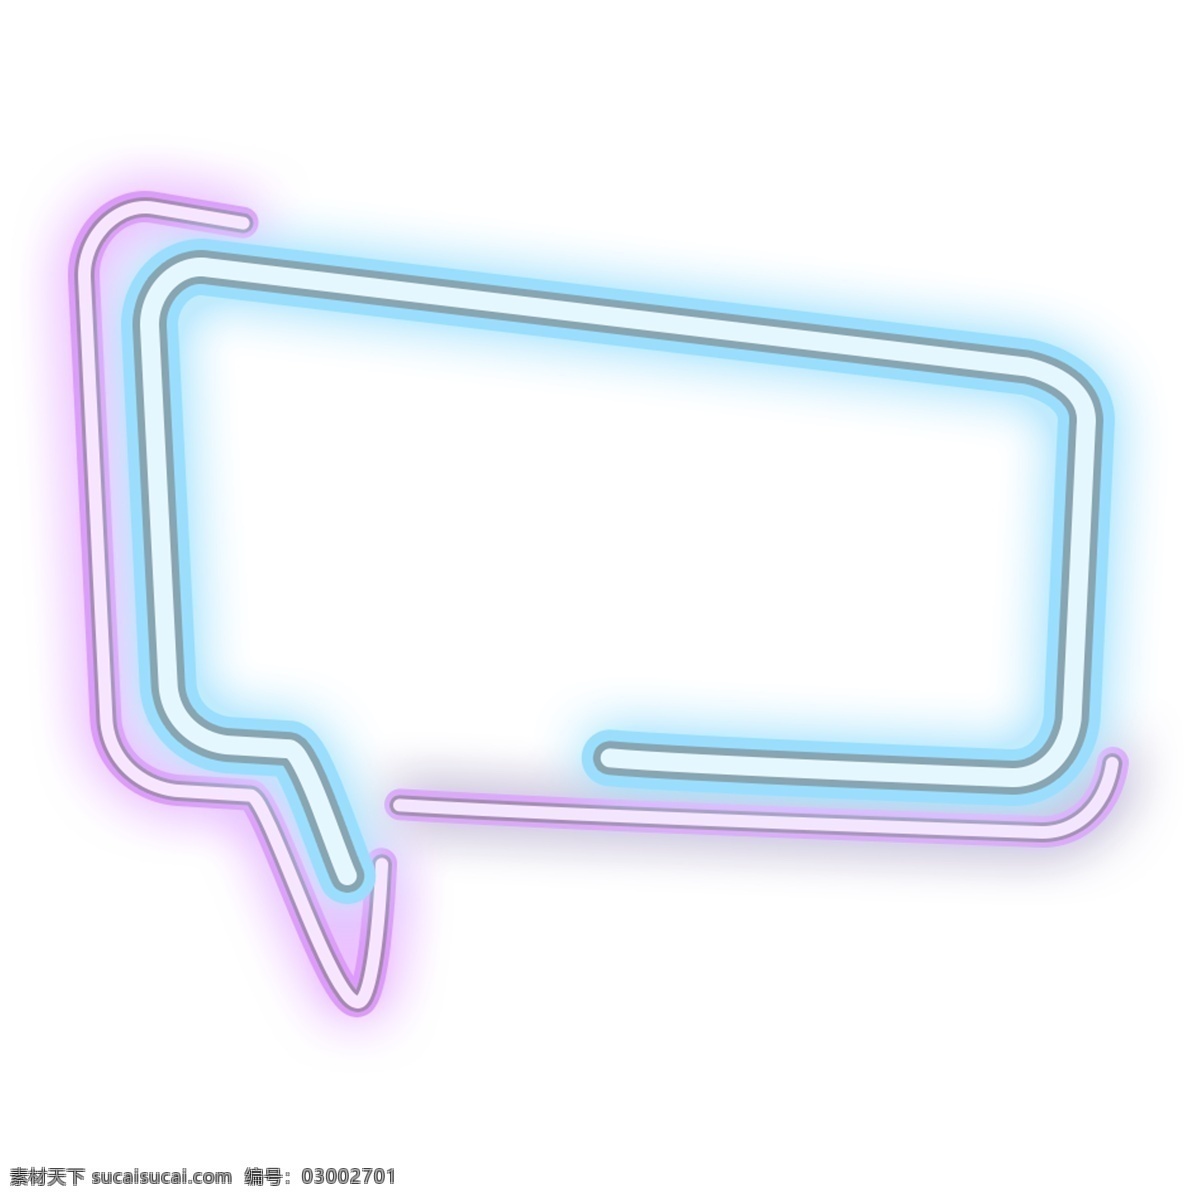 创意 霓虹 对话框 简约 霓虹光 边框 设计素材